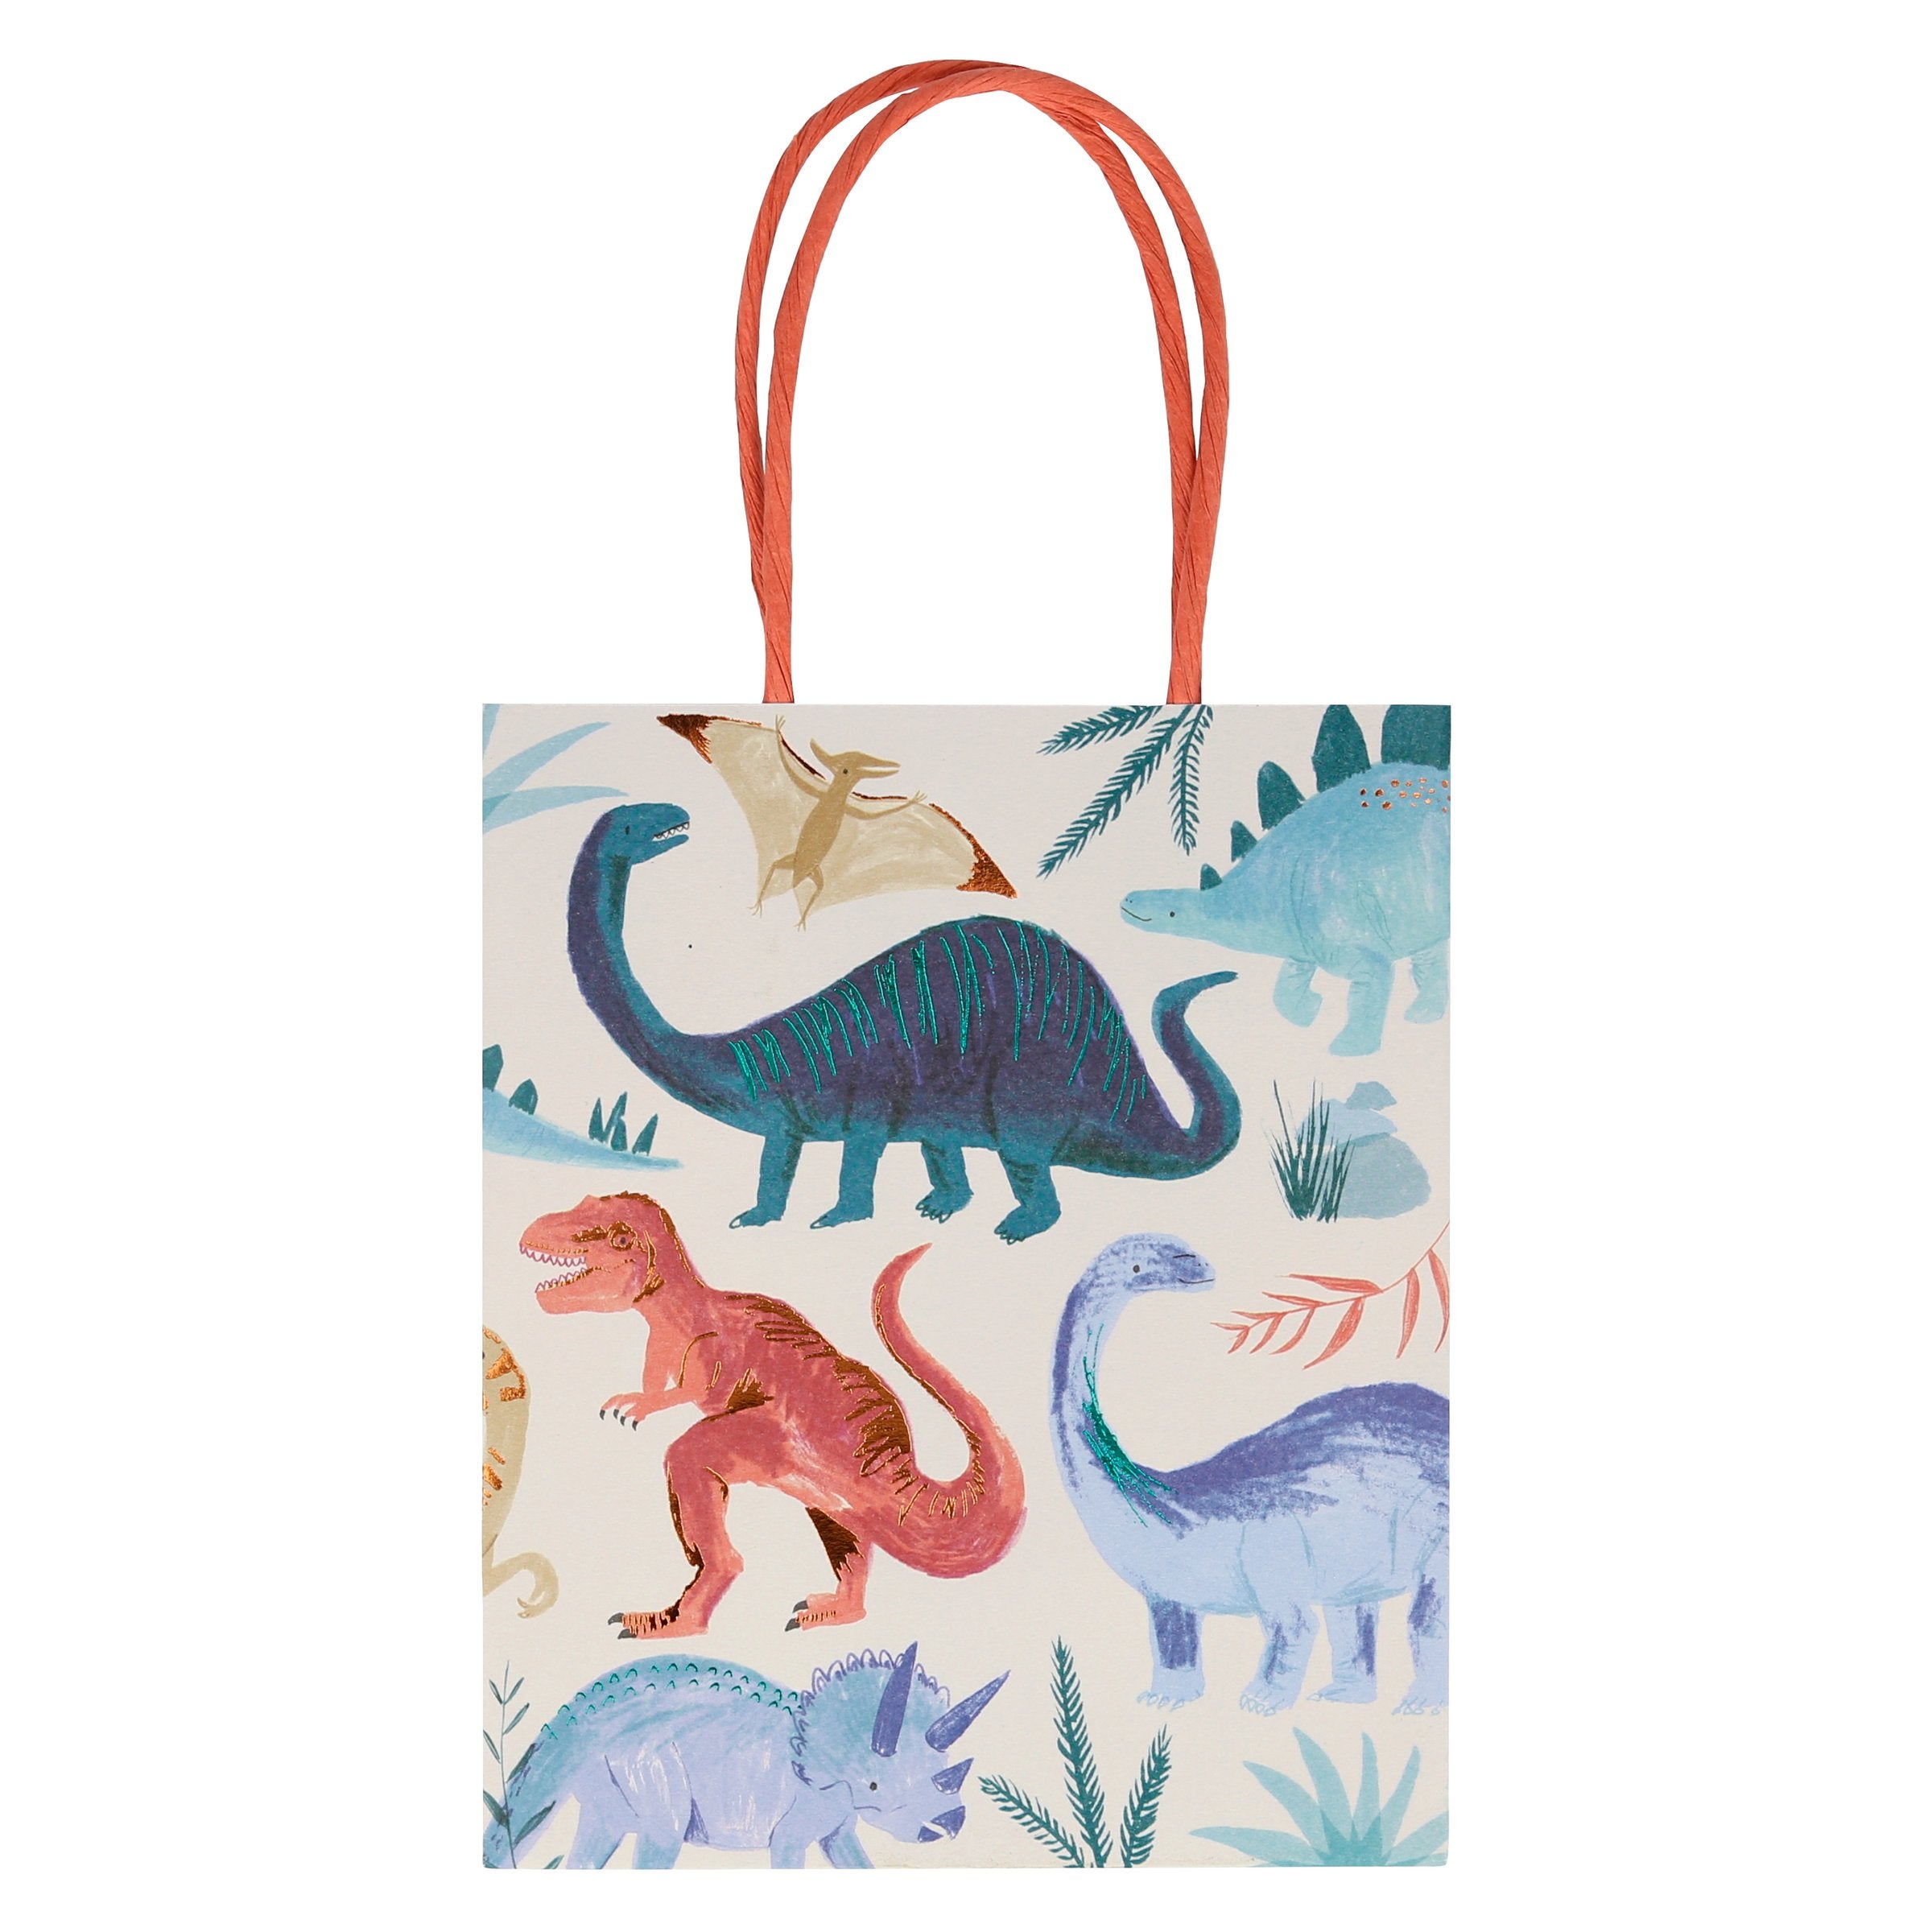 Dinosaur Bag in Red | Novelty Retro Handbags – Retrolicious